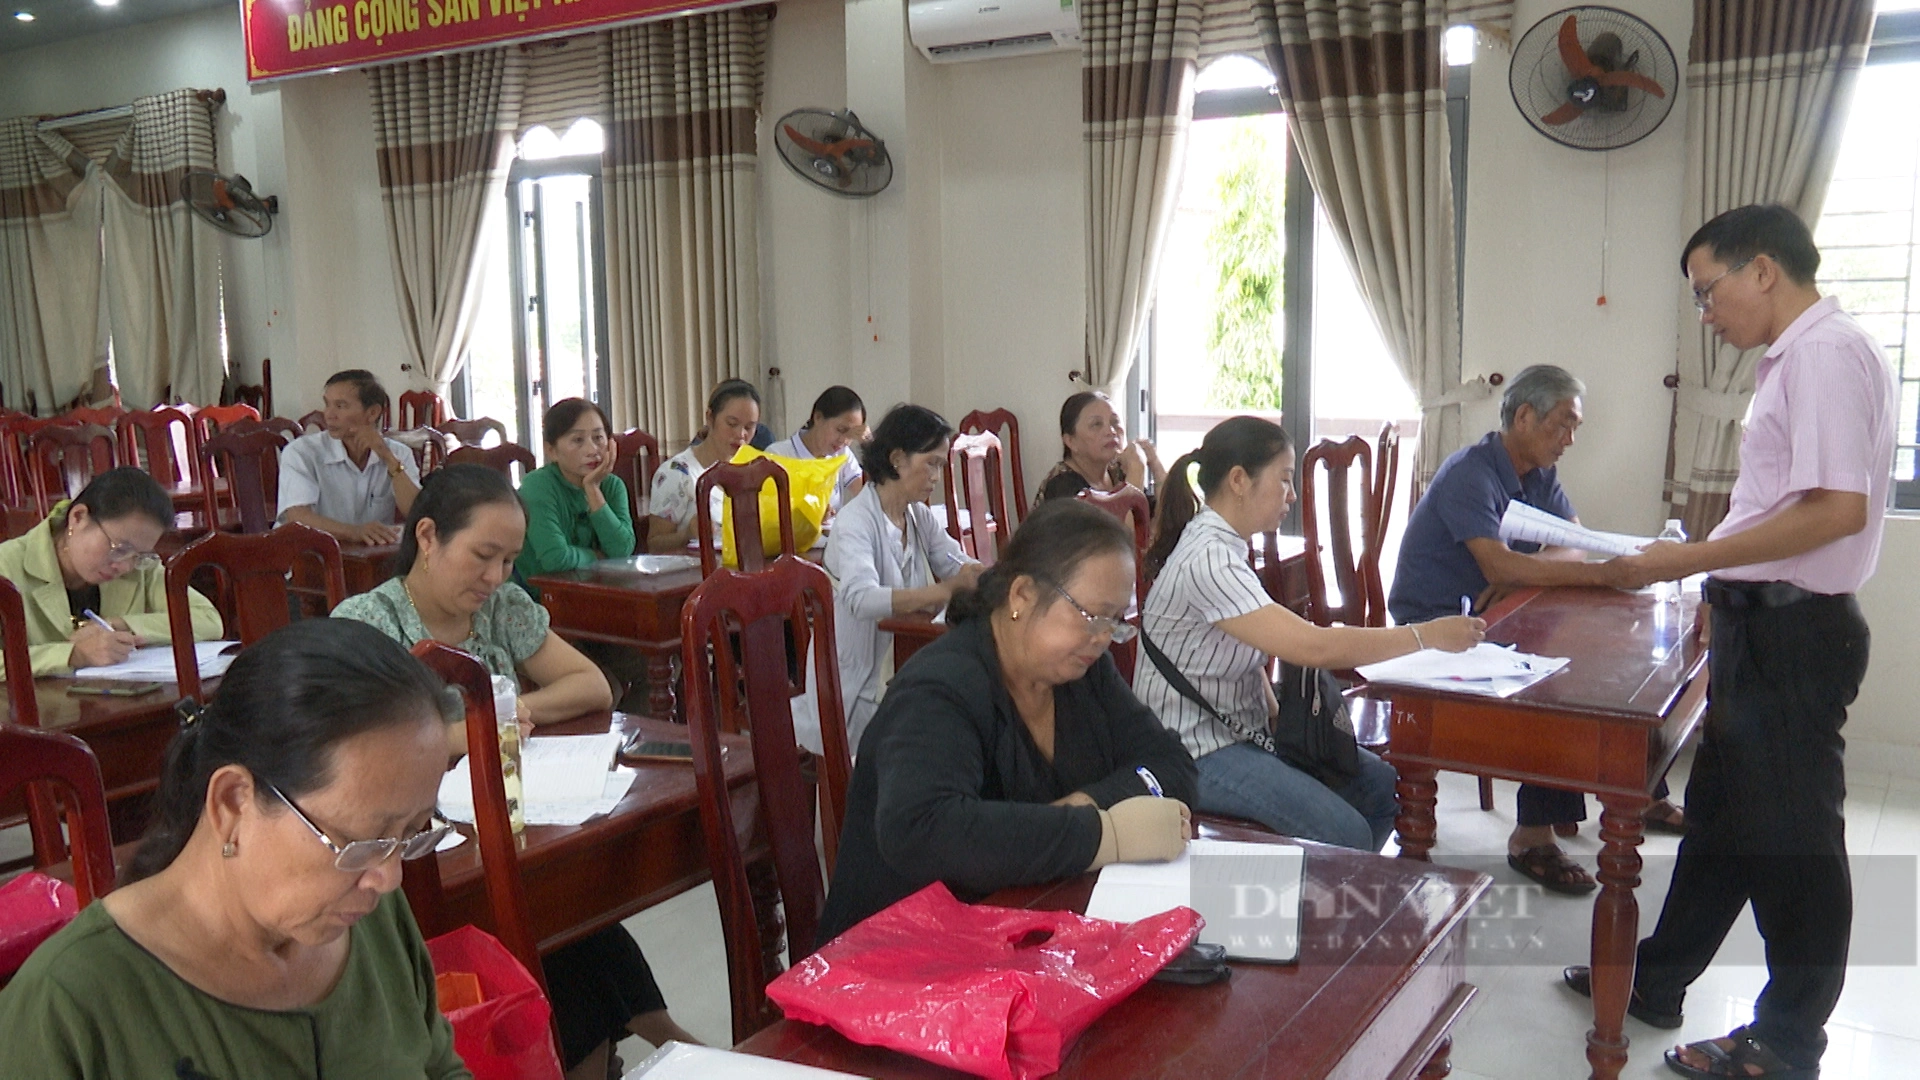 Nhờ tiếp sức nguồn vốn chính sách kịp thời, nông dân ở Quảng Nam phất lên làm giàu - Ảnh 4.